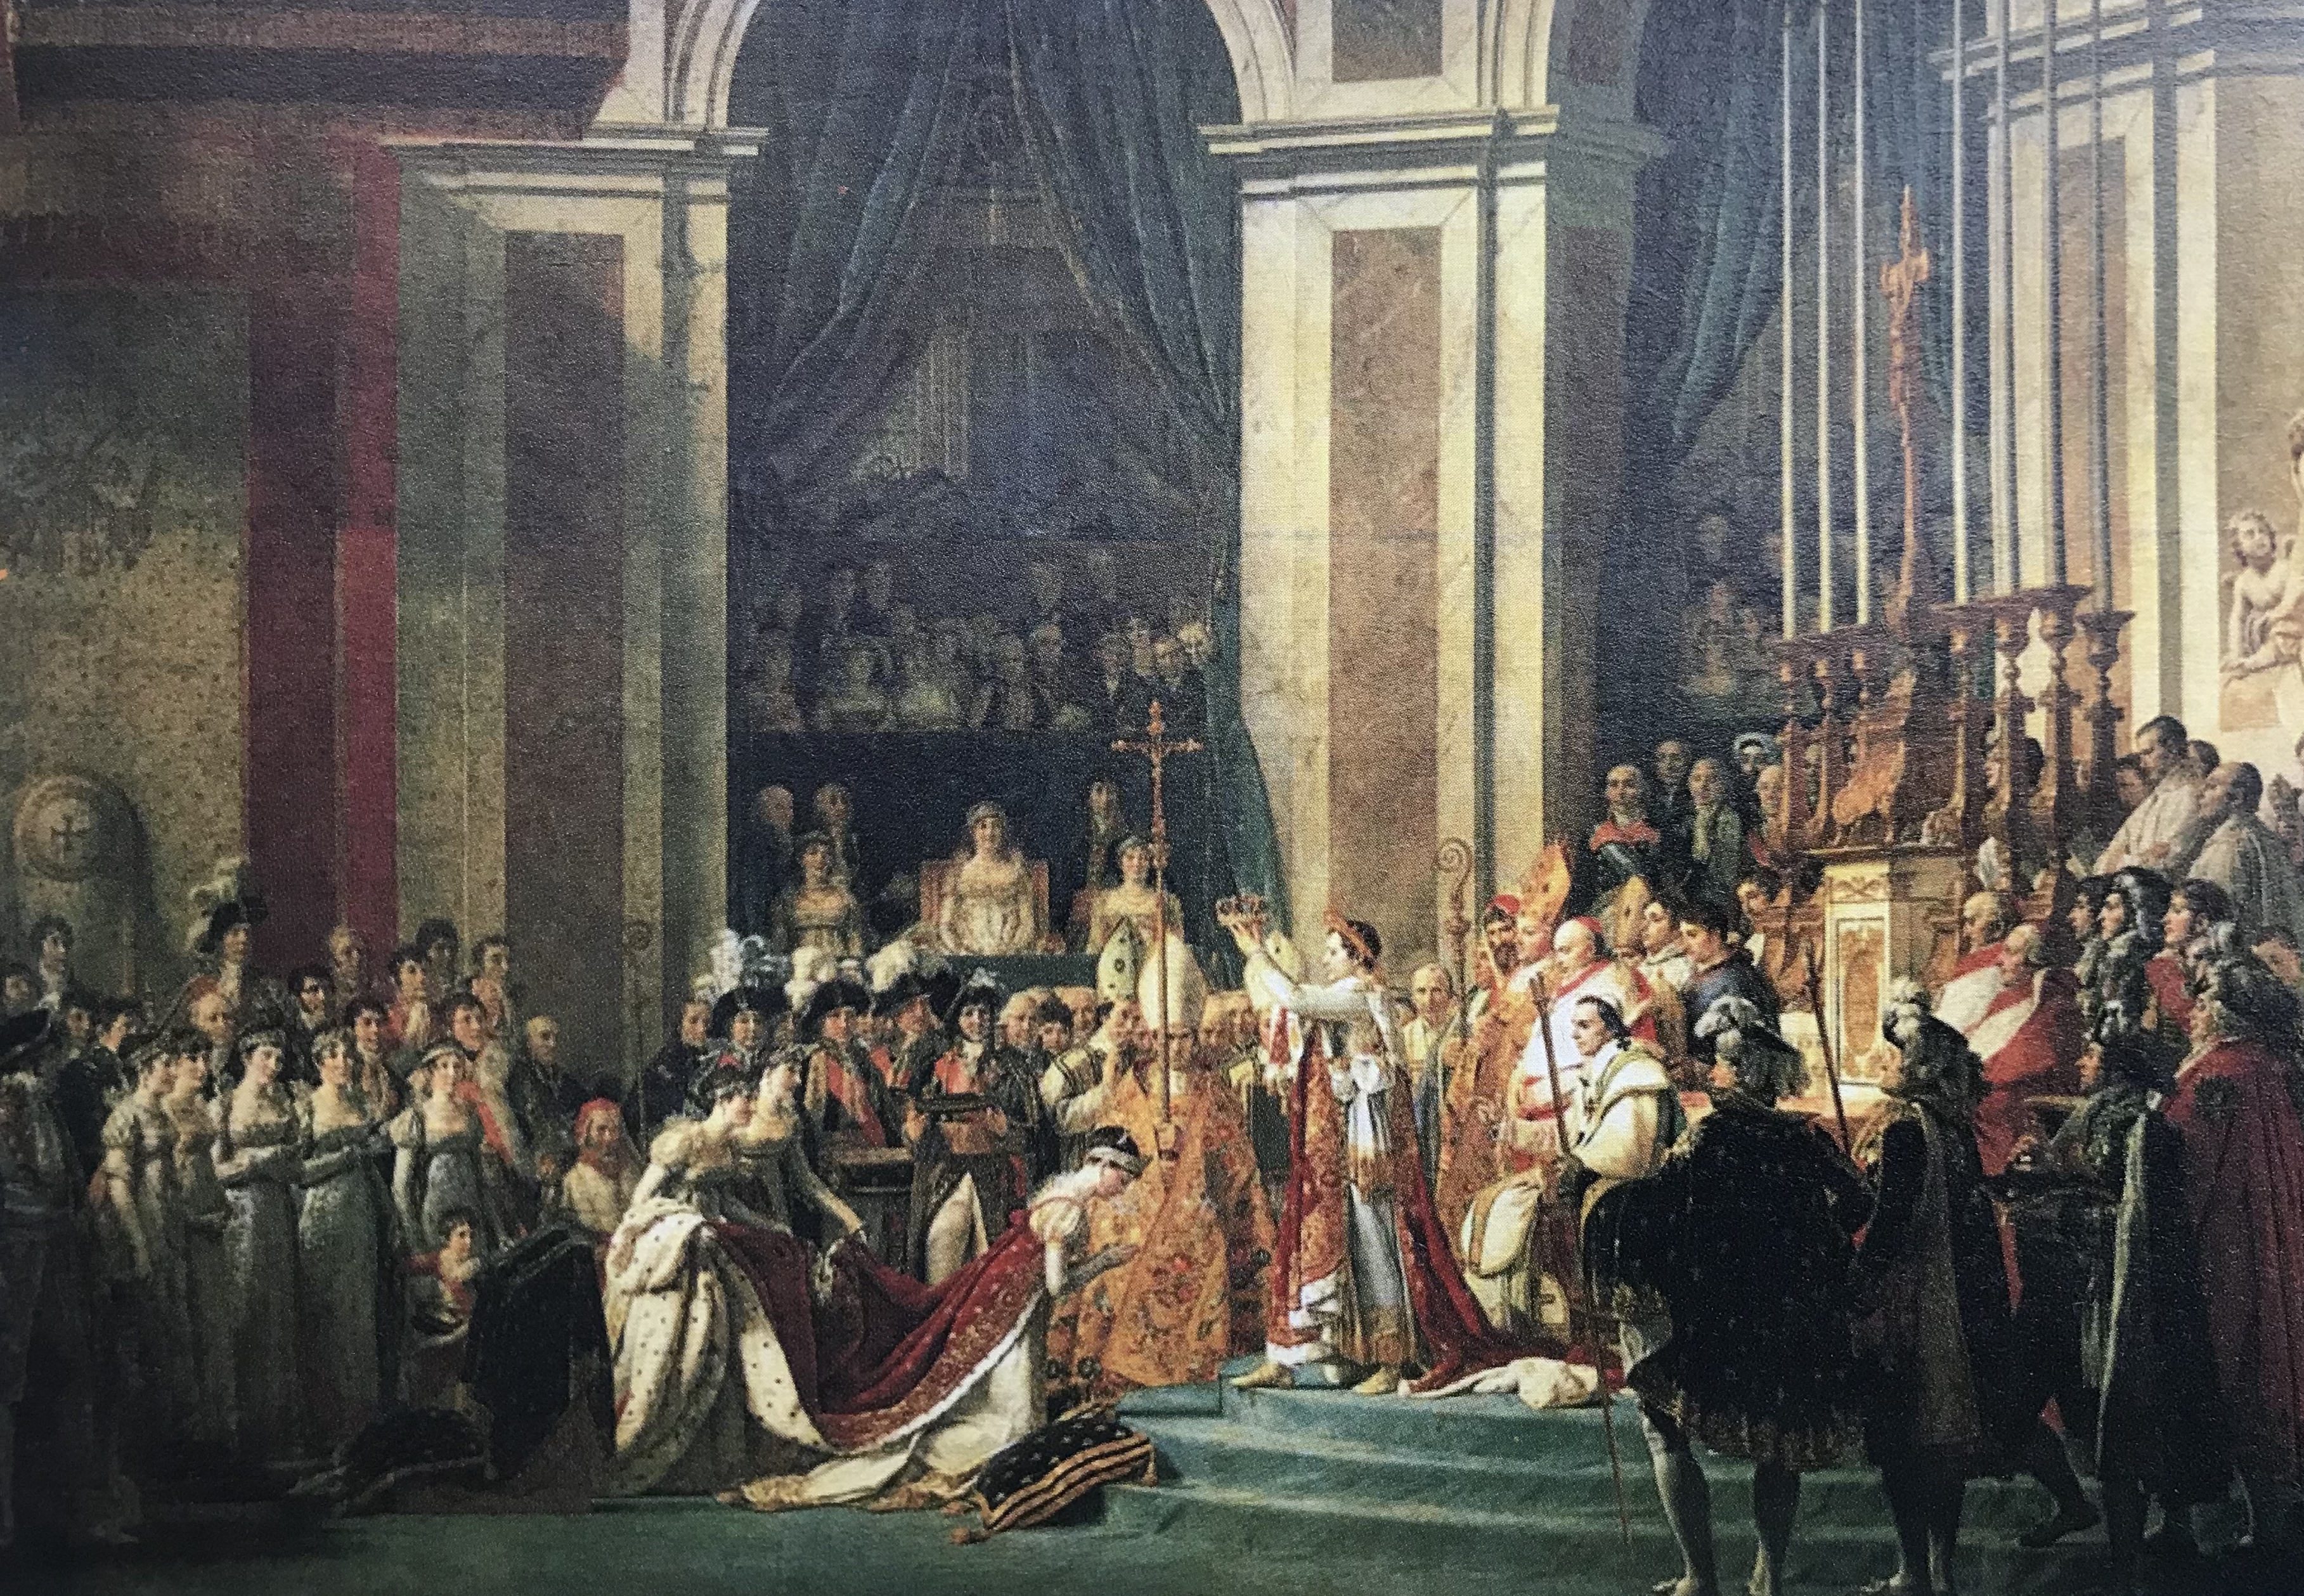 加冕式/大卫/布面油彩/610cm×931cm /公元1805-1807年/巴黎卢浮宫